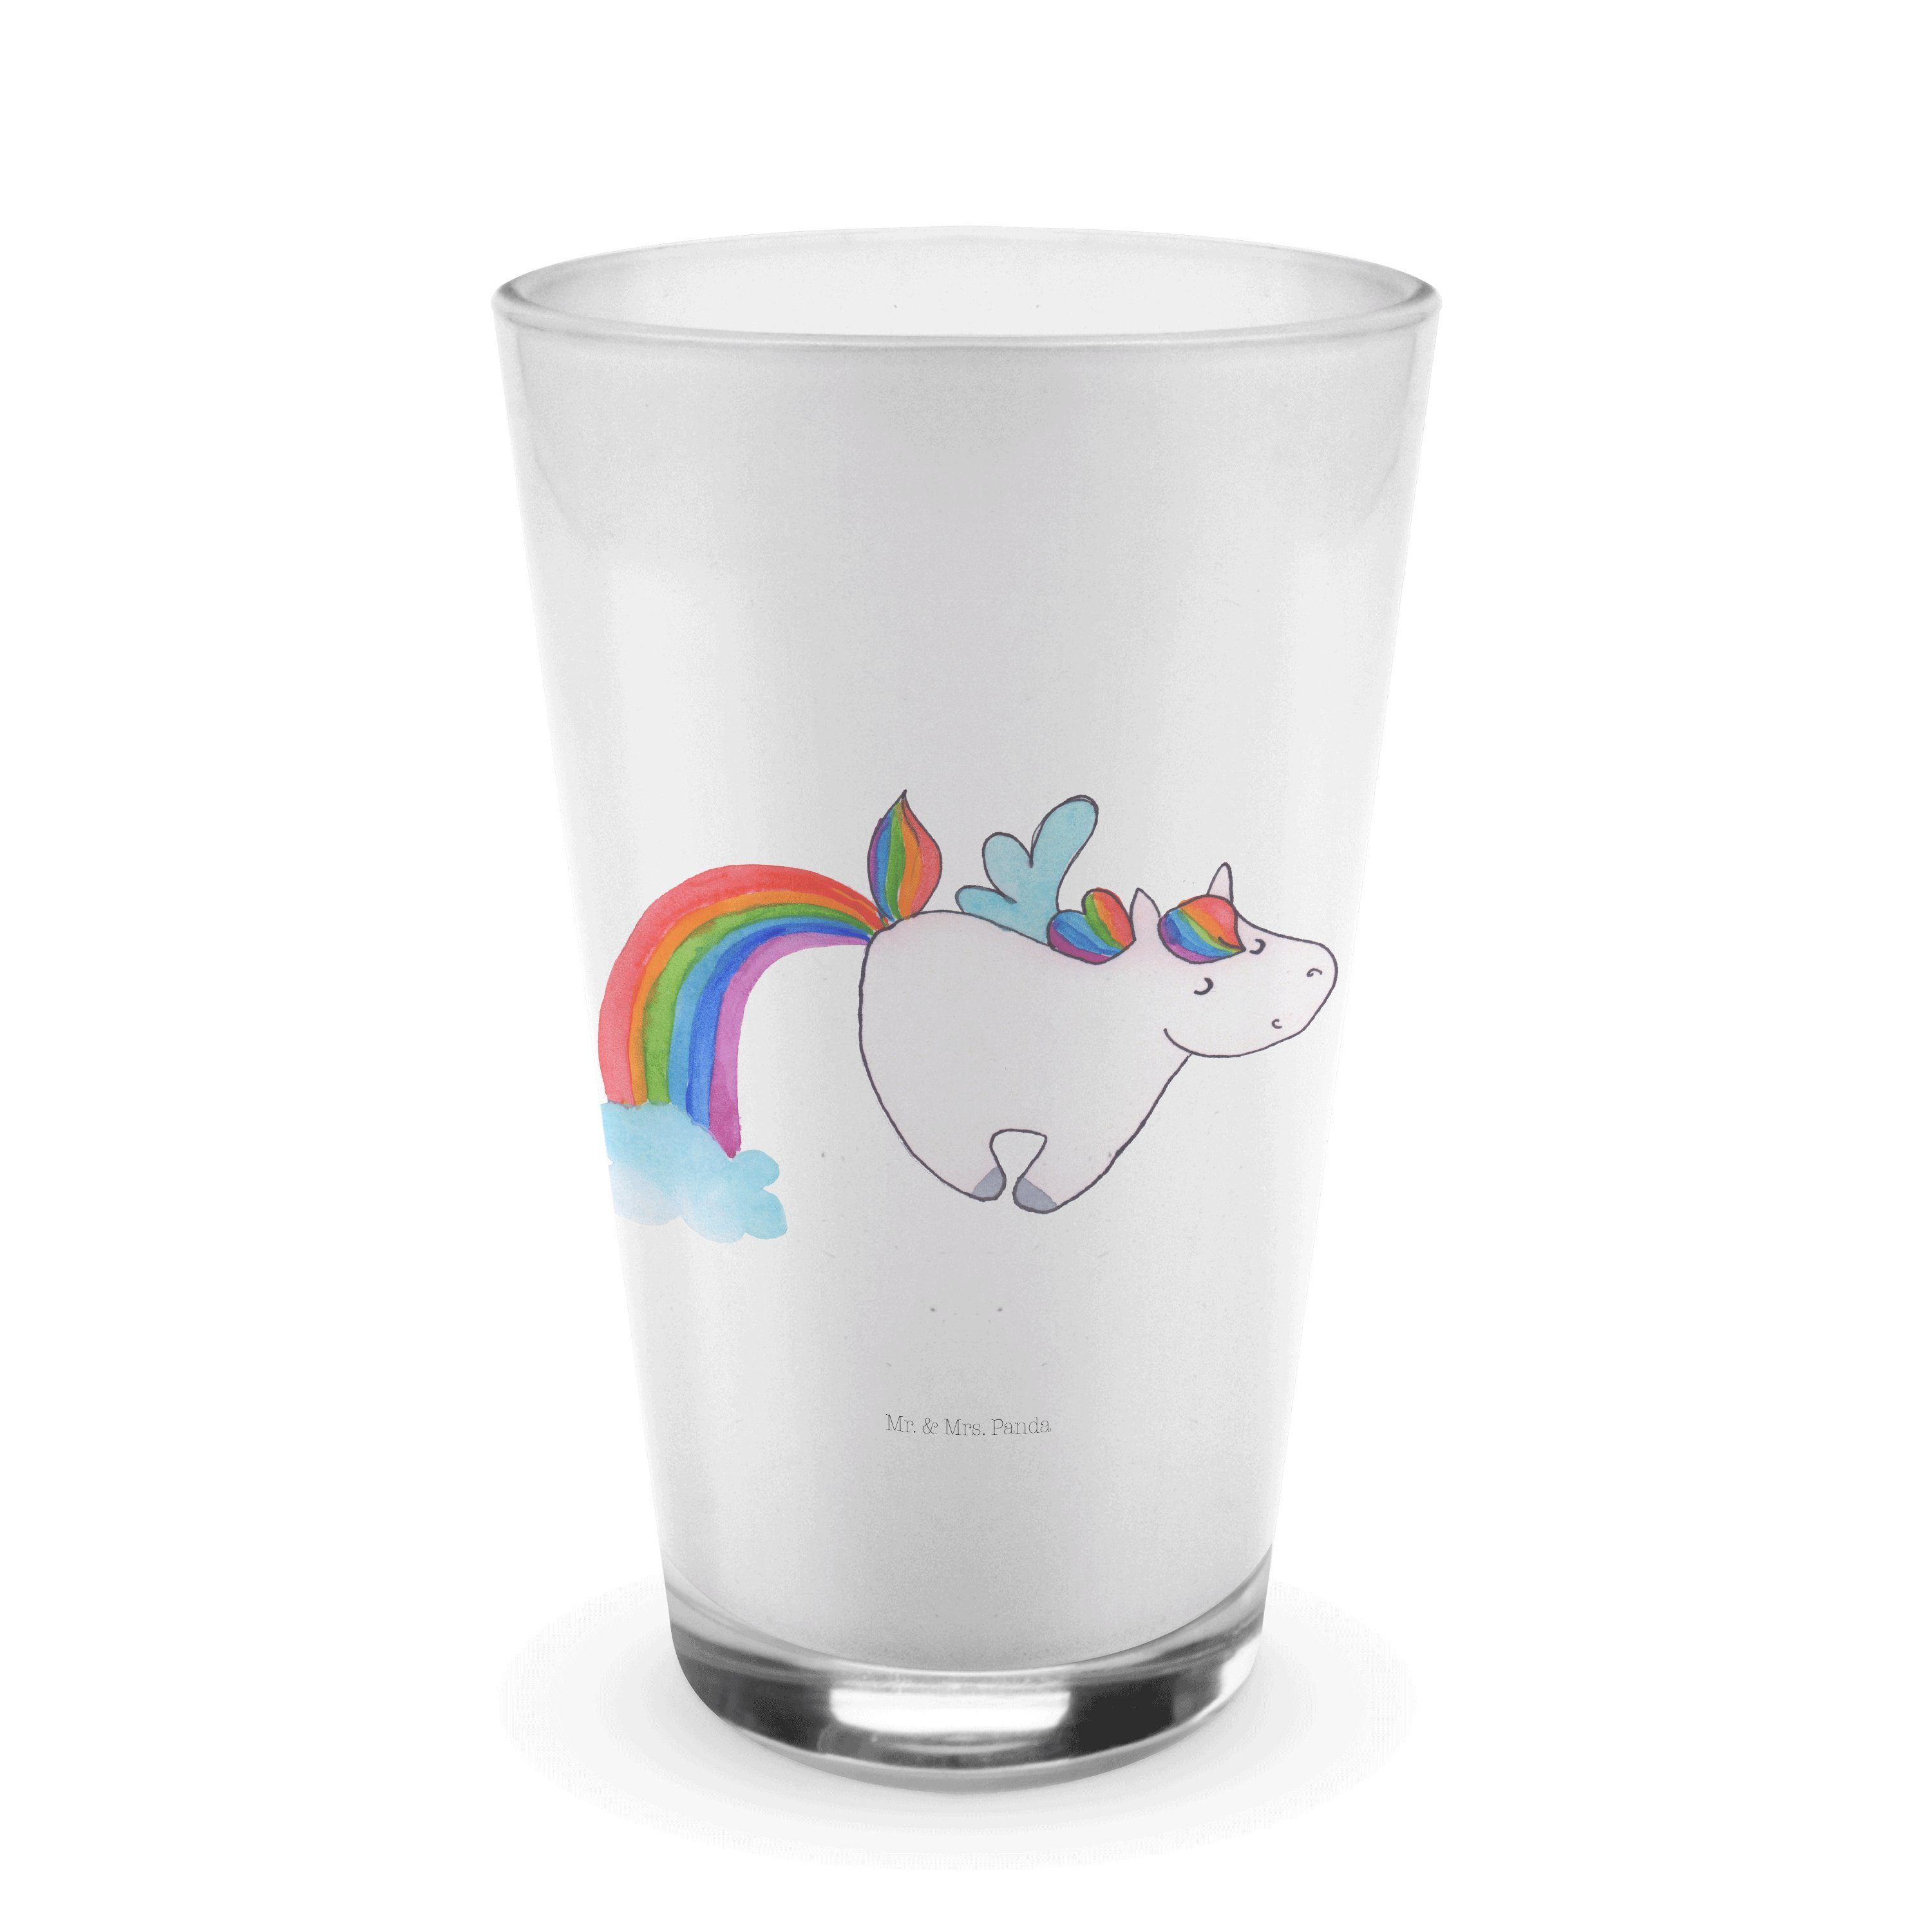 Mr. & Mrs. Panda Glas Einhorn Pegasus - Transparent - Geschenk, Latte Macchiato, Cappuccino, Premium Glas